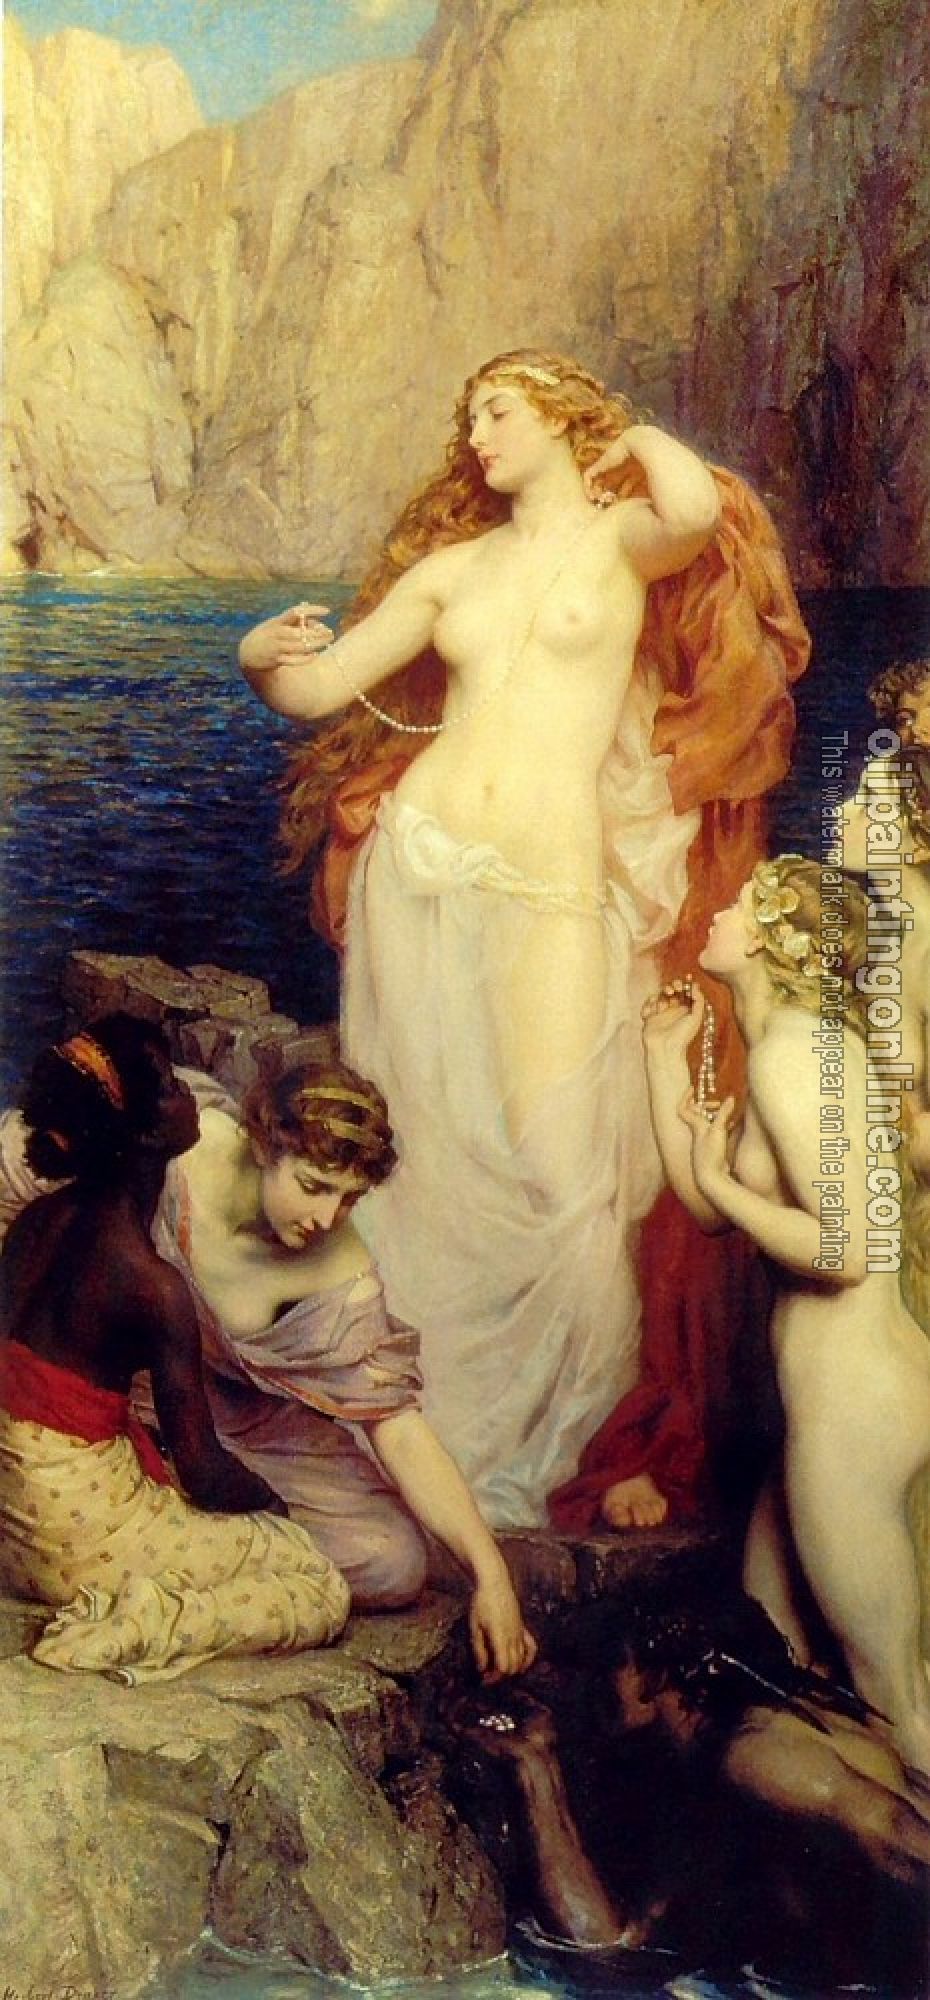 Herbert James Draper - The Pearls of Aphrodite